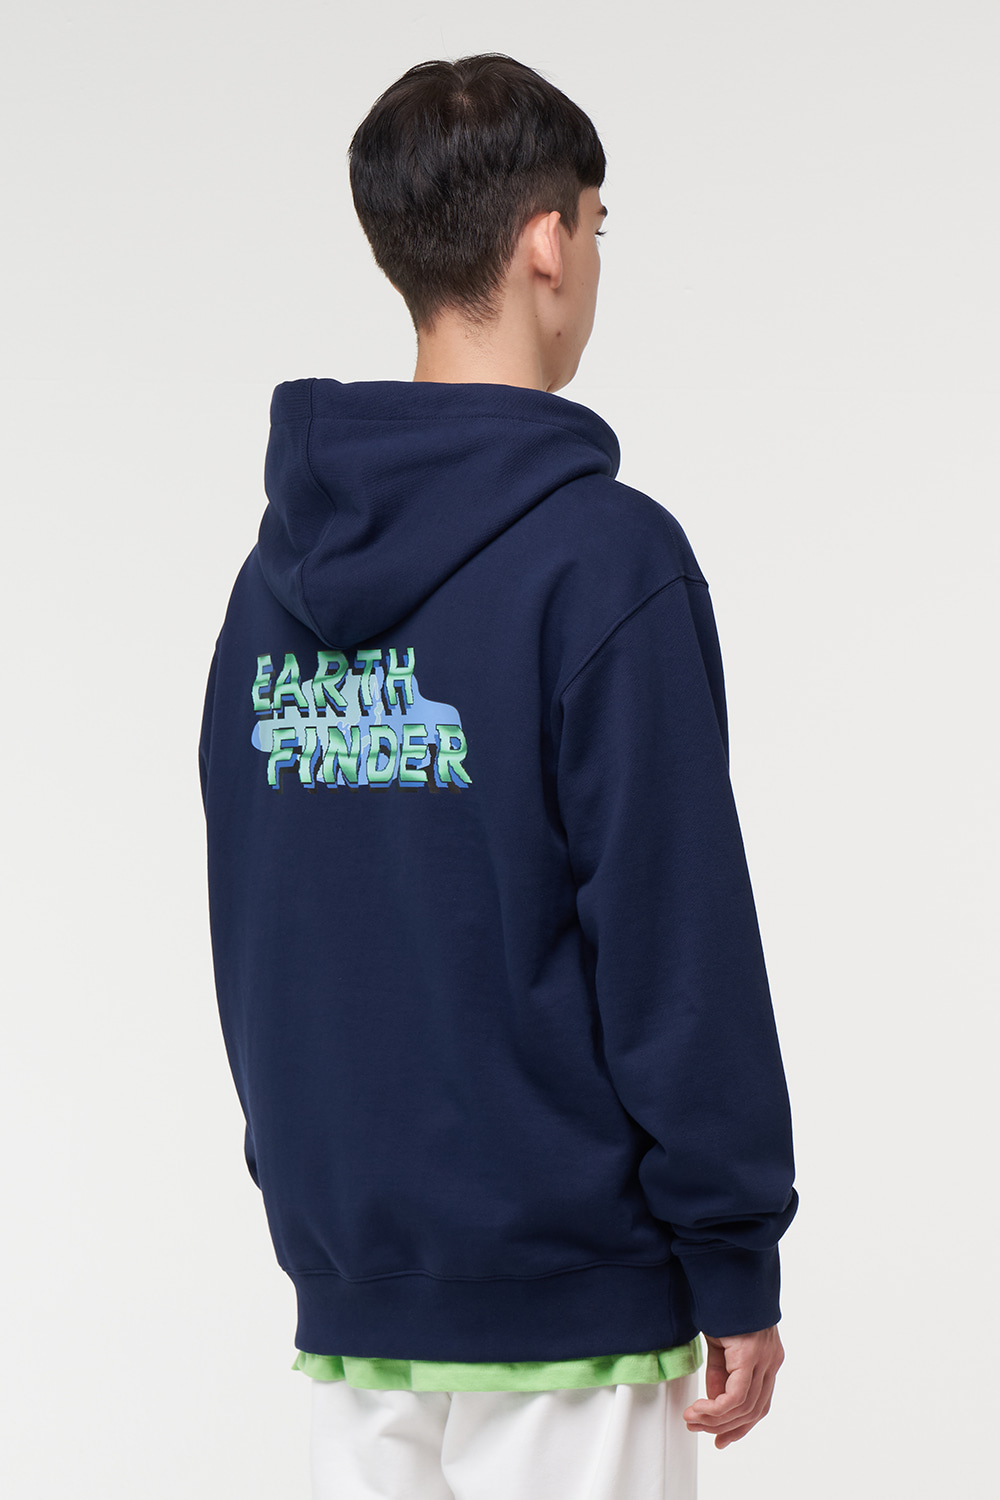 Earth finder hoodie_Navy